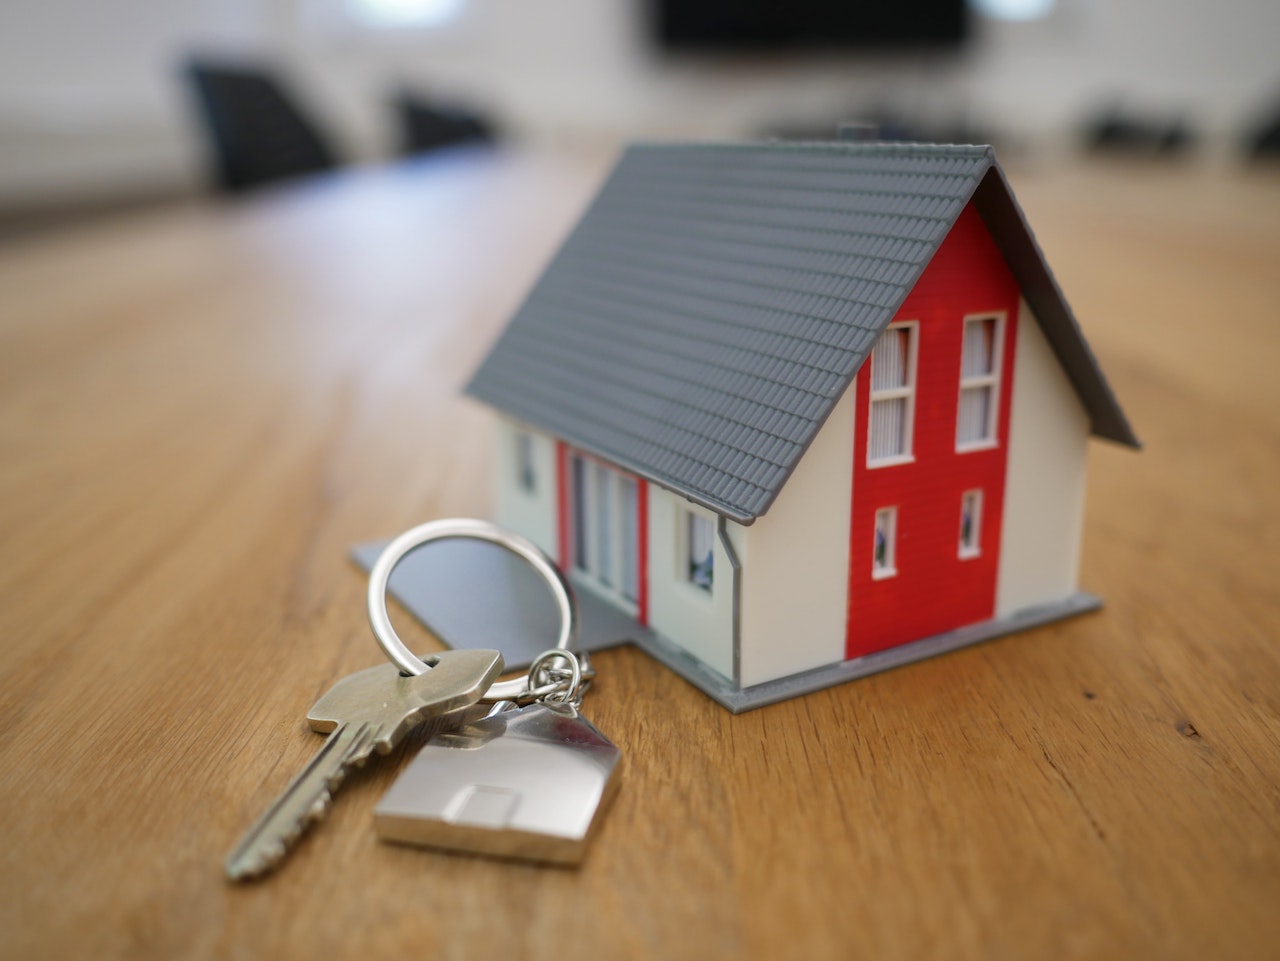 A tiny house and a big set of keys